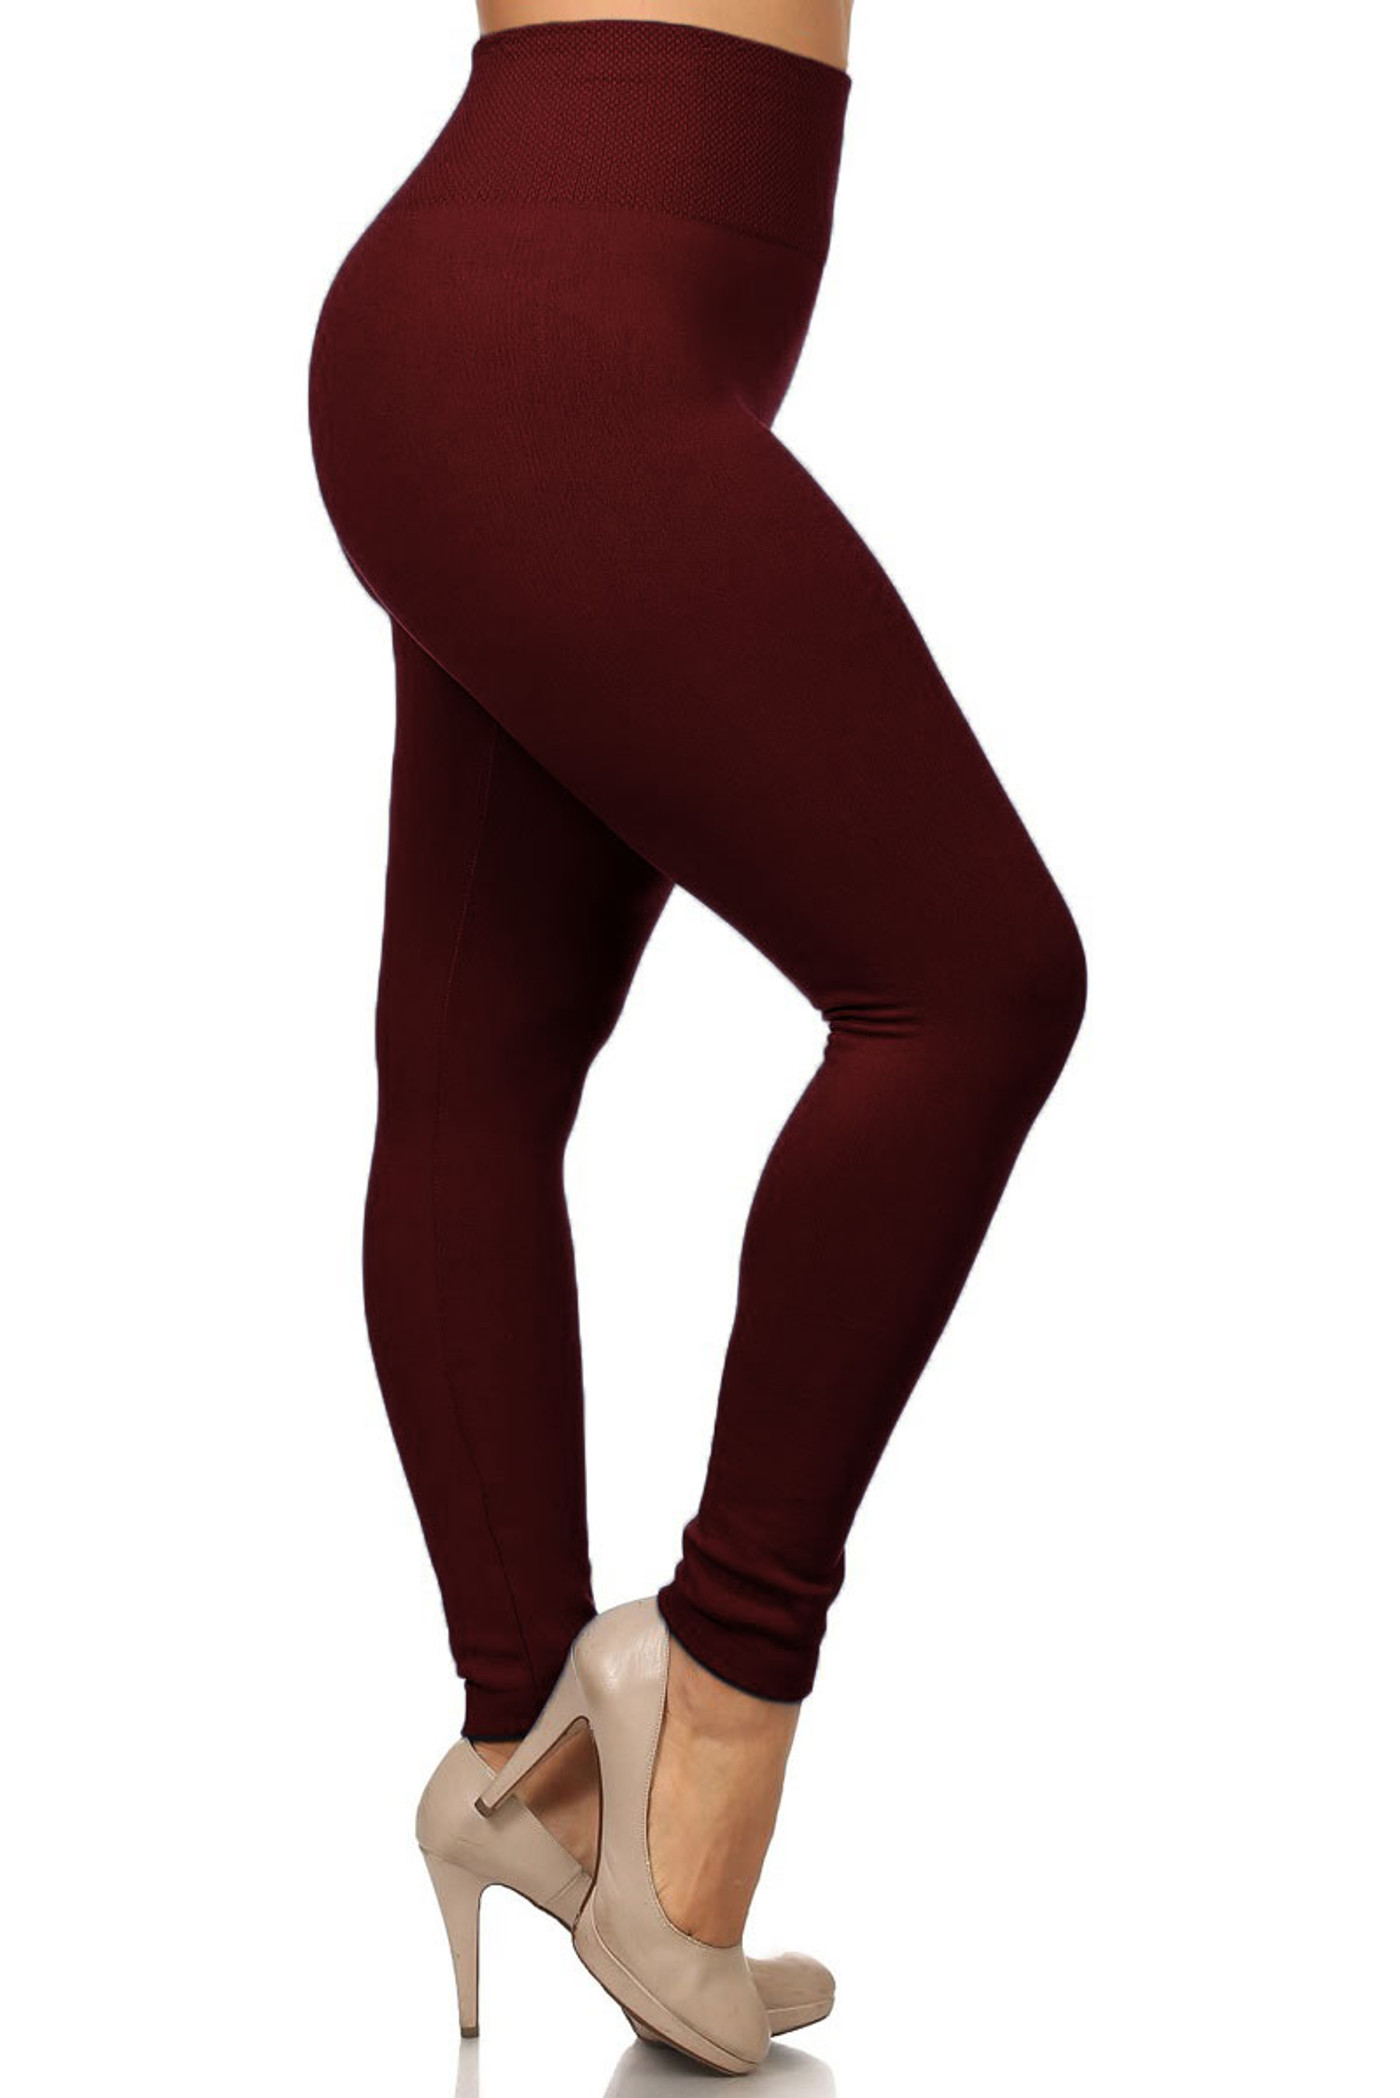 Women Queen Size Warm Fleece Lined Full Length Leggings Plus Size (L/1X/2X)  - Helia Beer Co